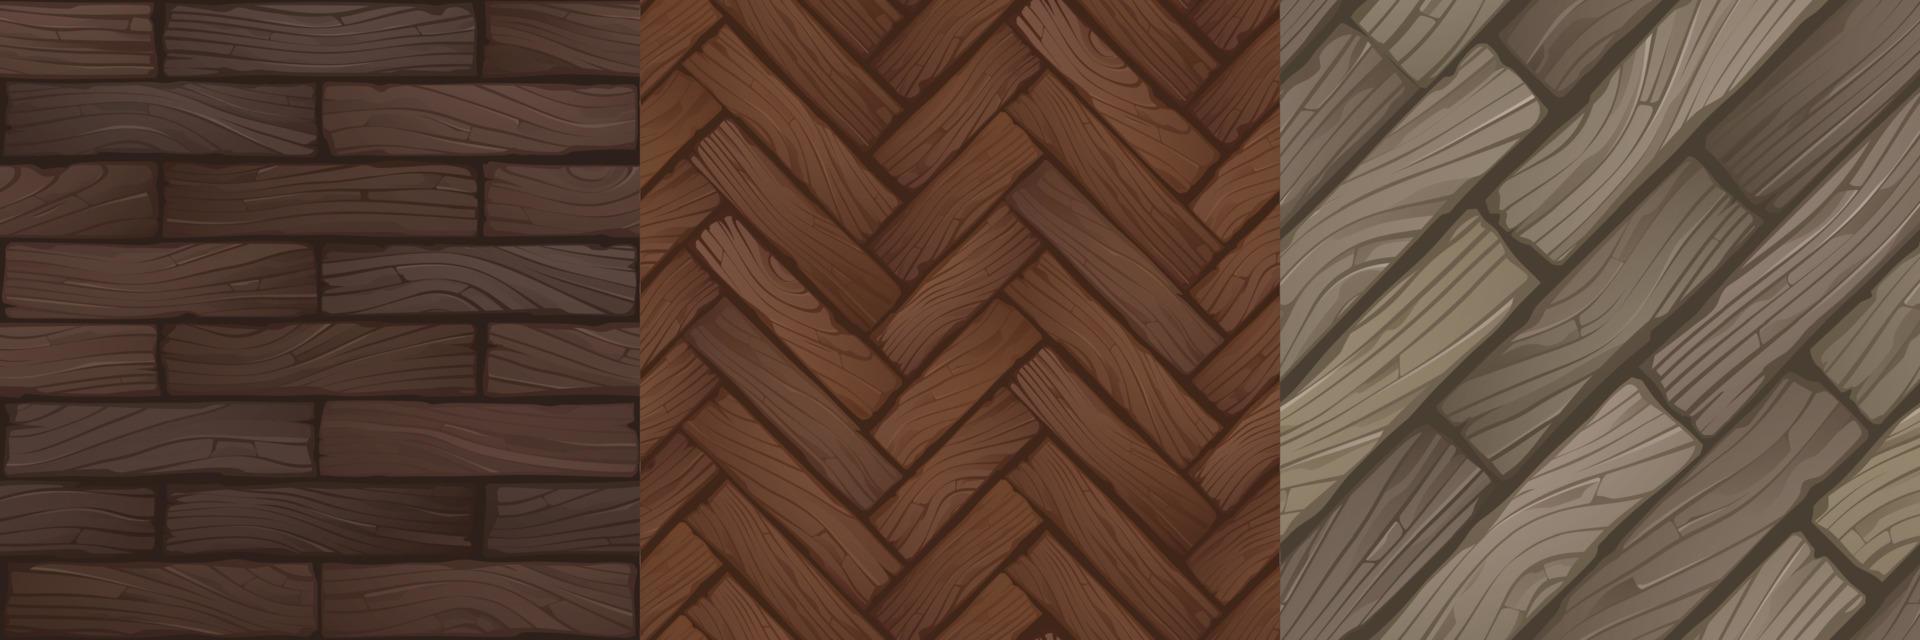 texturas de parquet de madera, suelos de madera vector